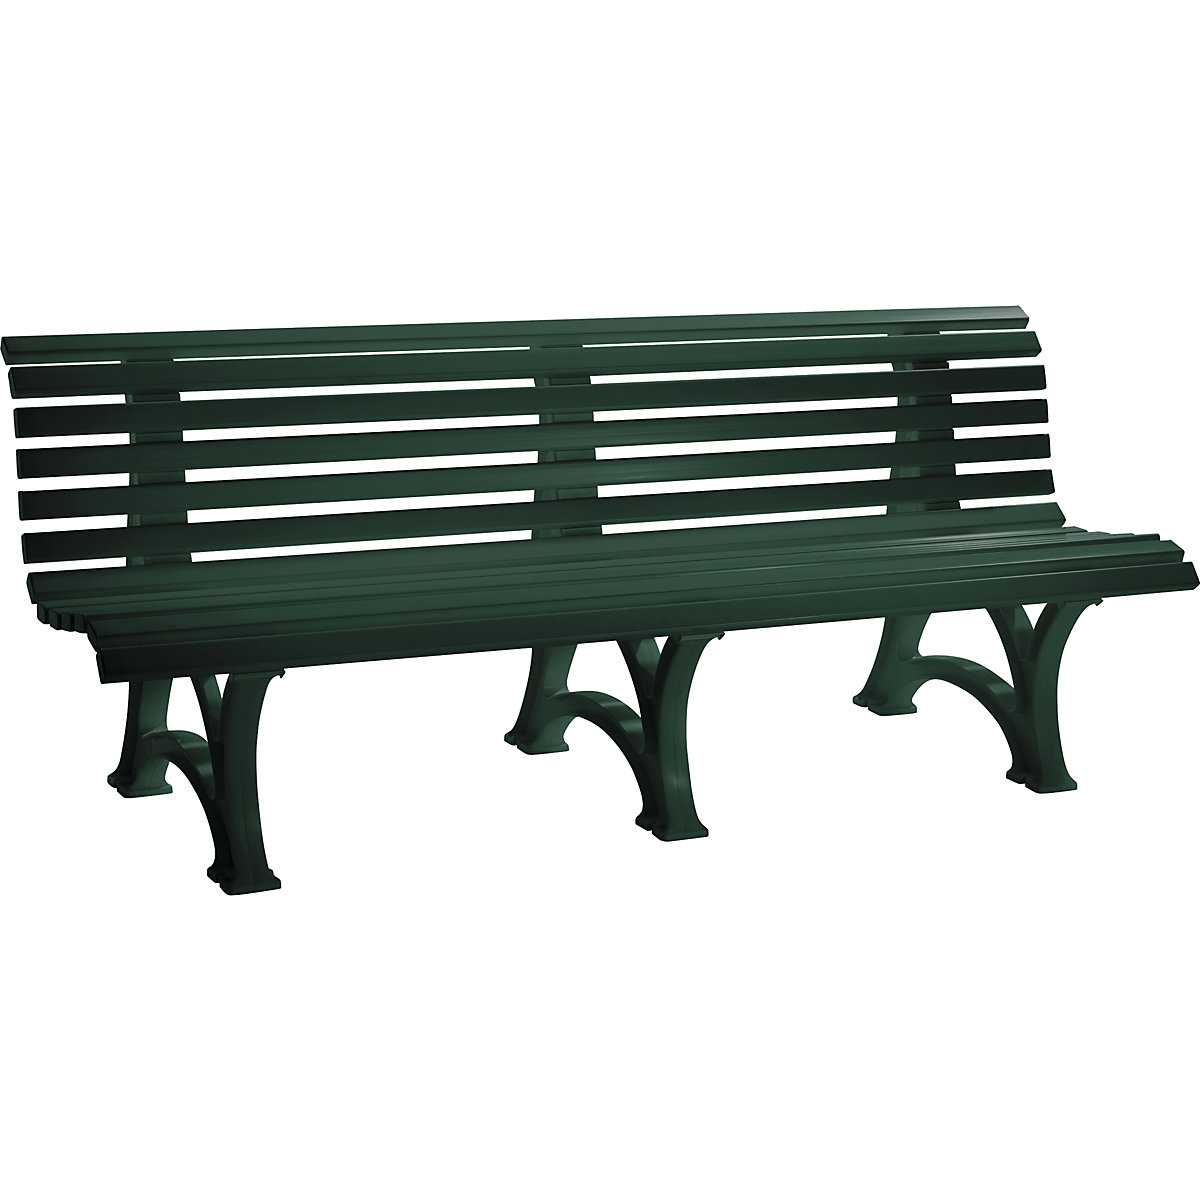 Parková lavička z plastu, s 13 lištami, šířka 2000 mm, mechově zelená-5